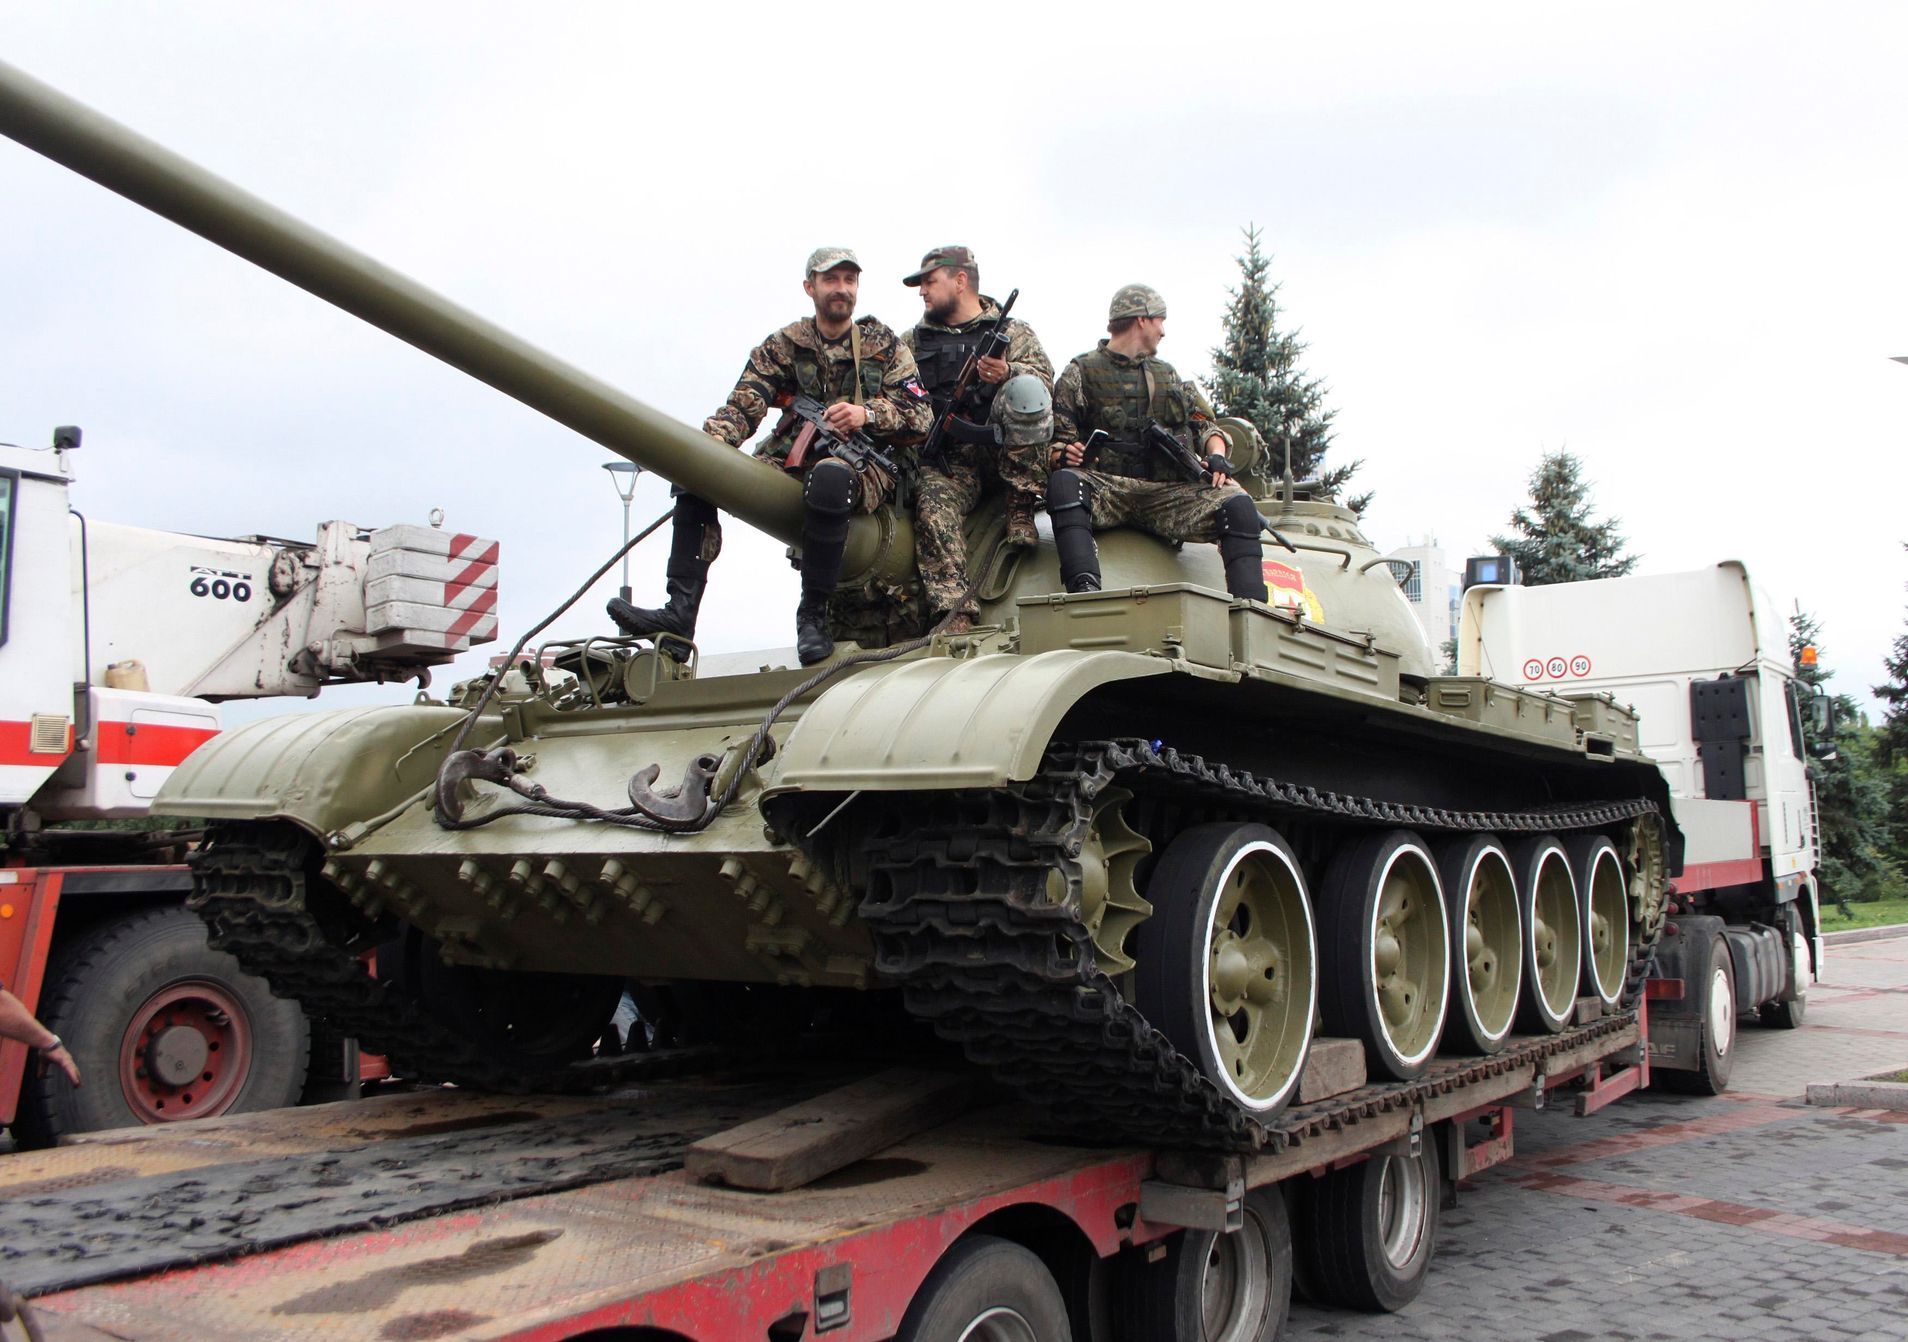 Ukrajina - Doněck - separatisté - tank T-54 - muzeum